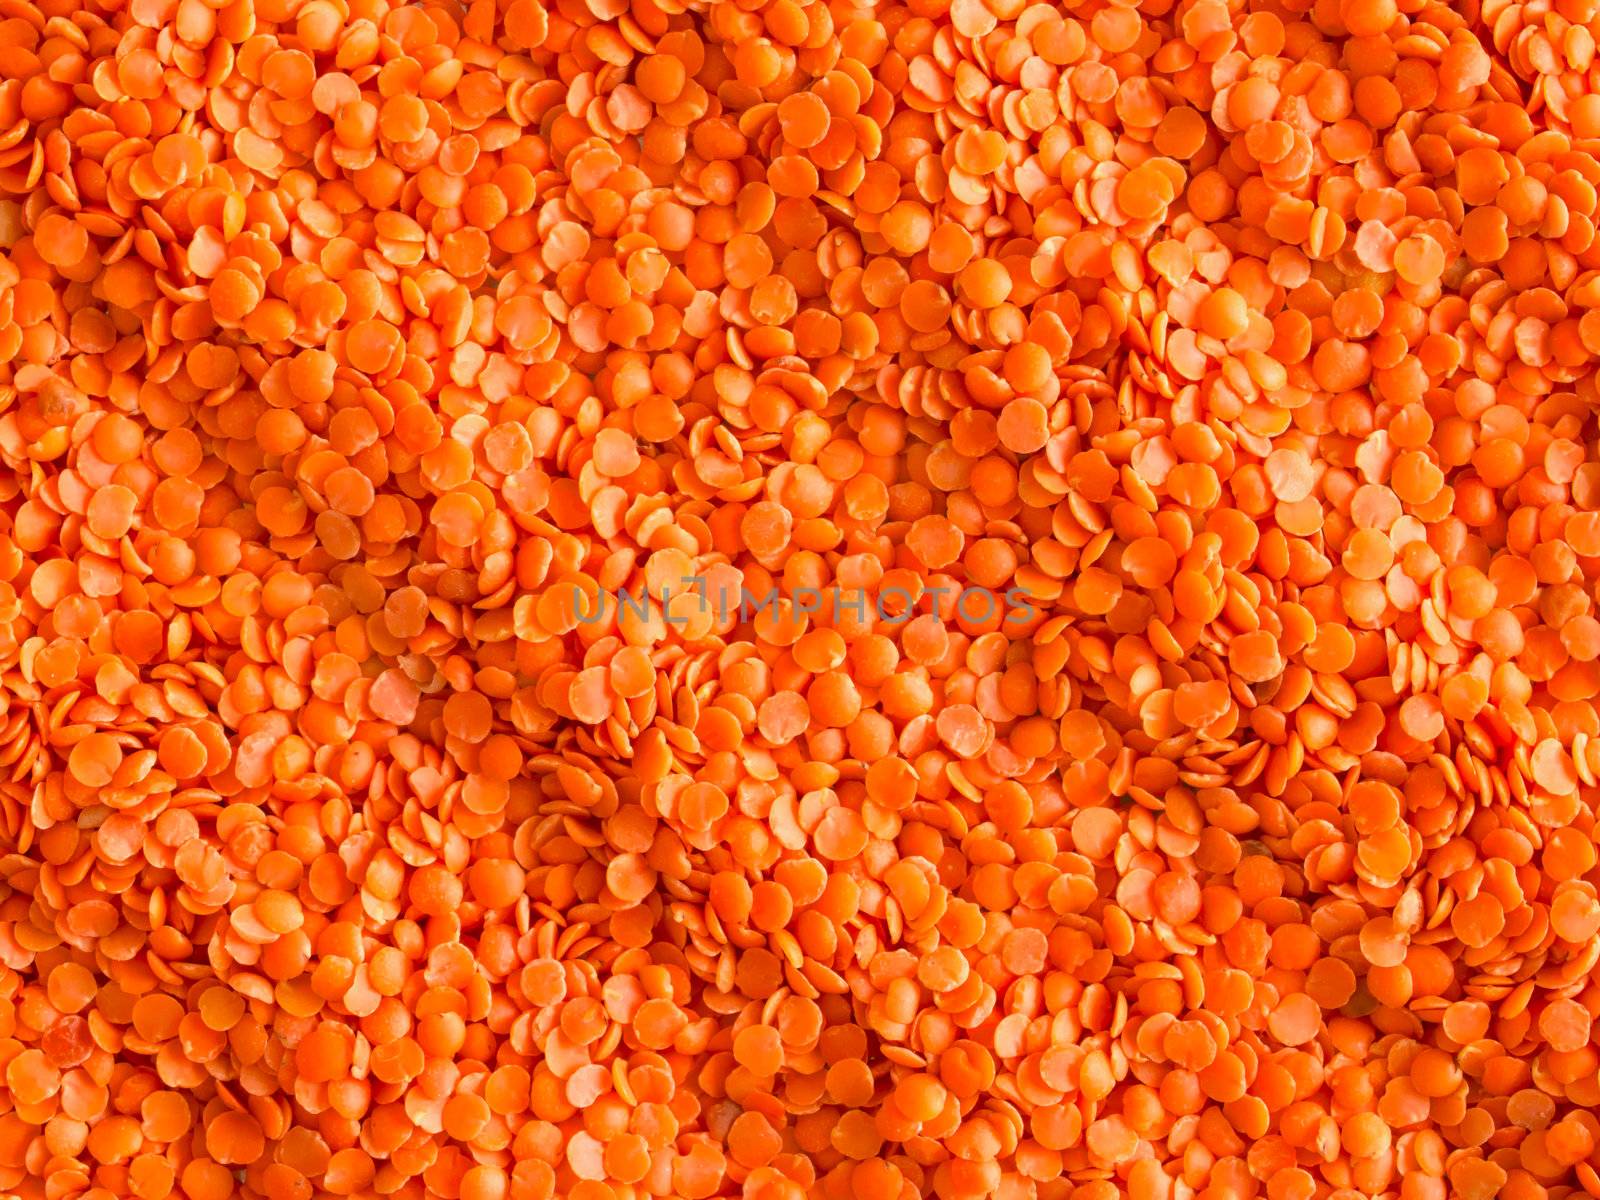 red lentils by zkruger